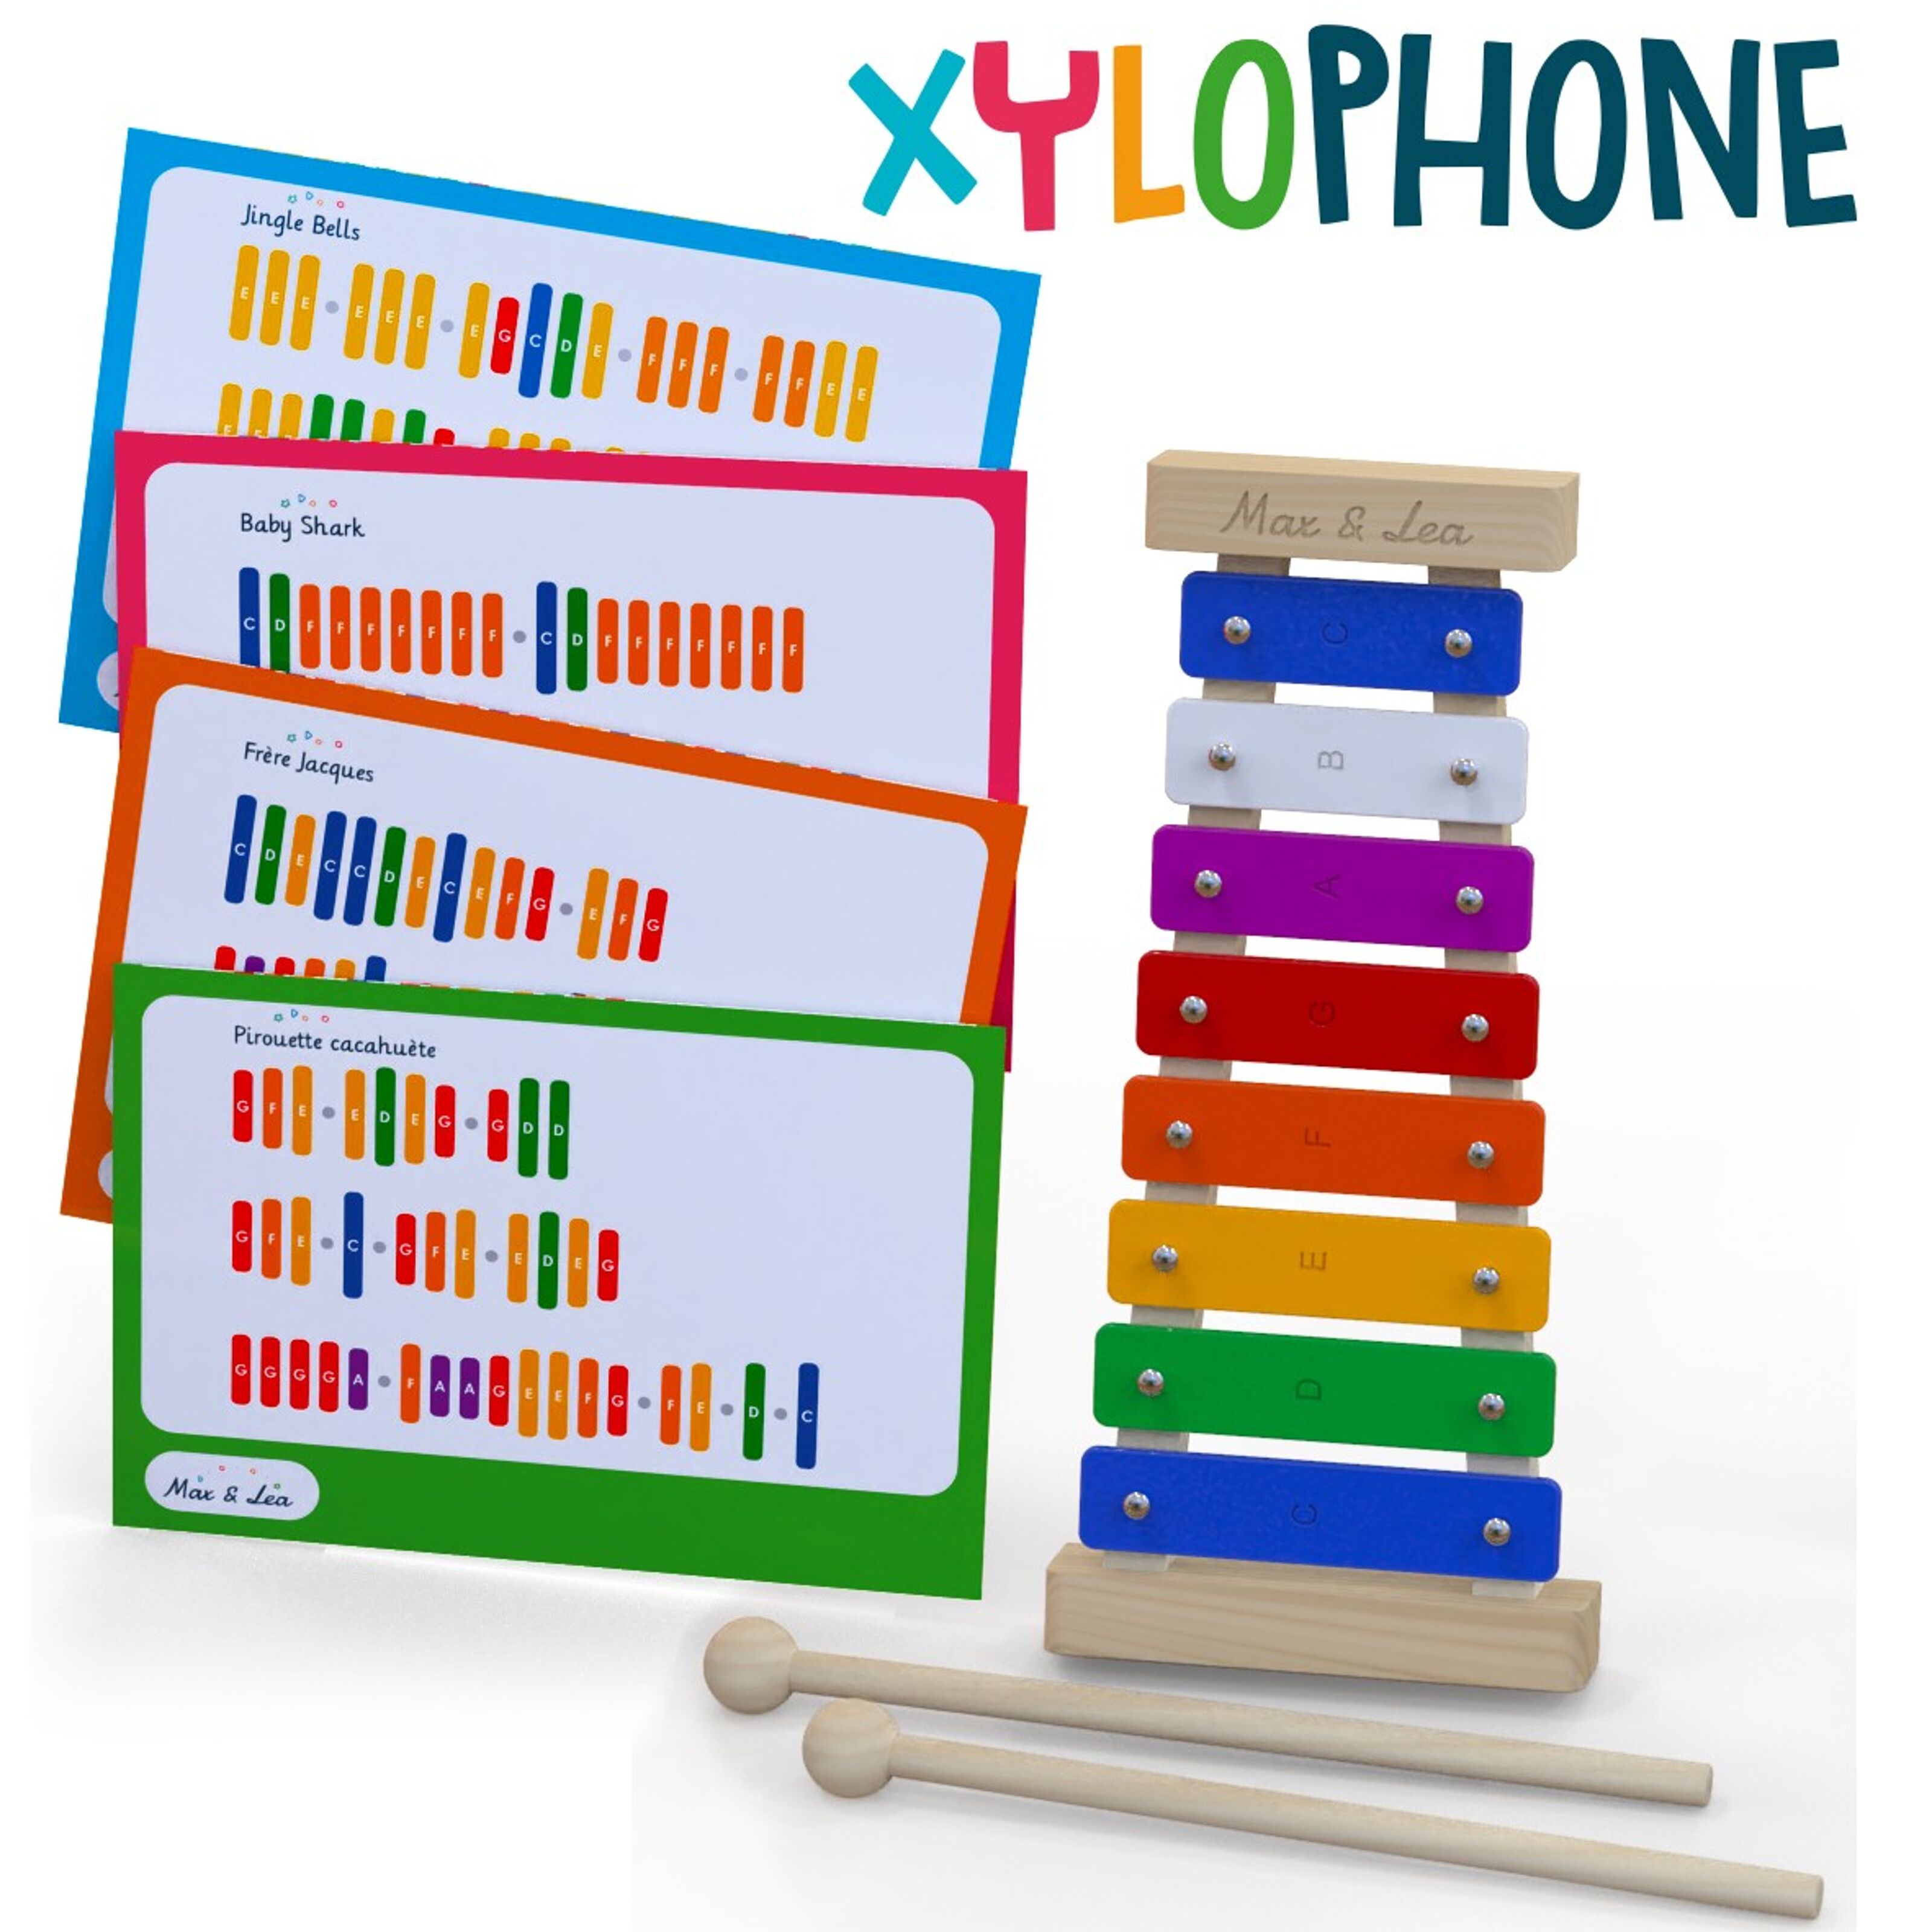 Max & Lea - Xylophone pour Enfants - Instrument Musical Métallophone pour  découvrir les notes - Développe la capacité auditive - Qualité sonore